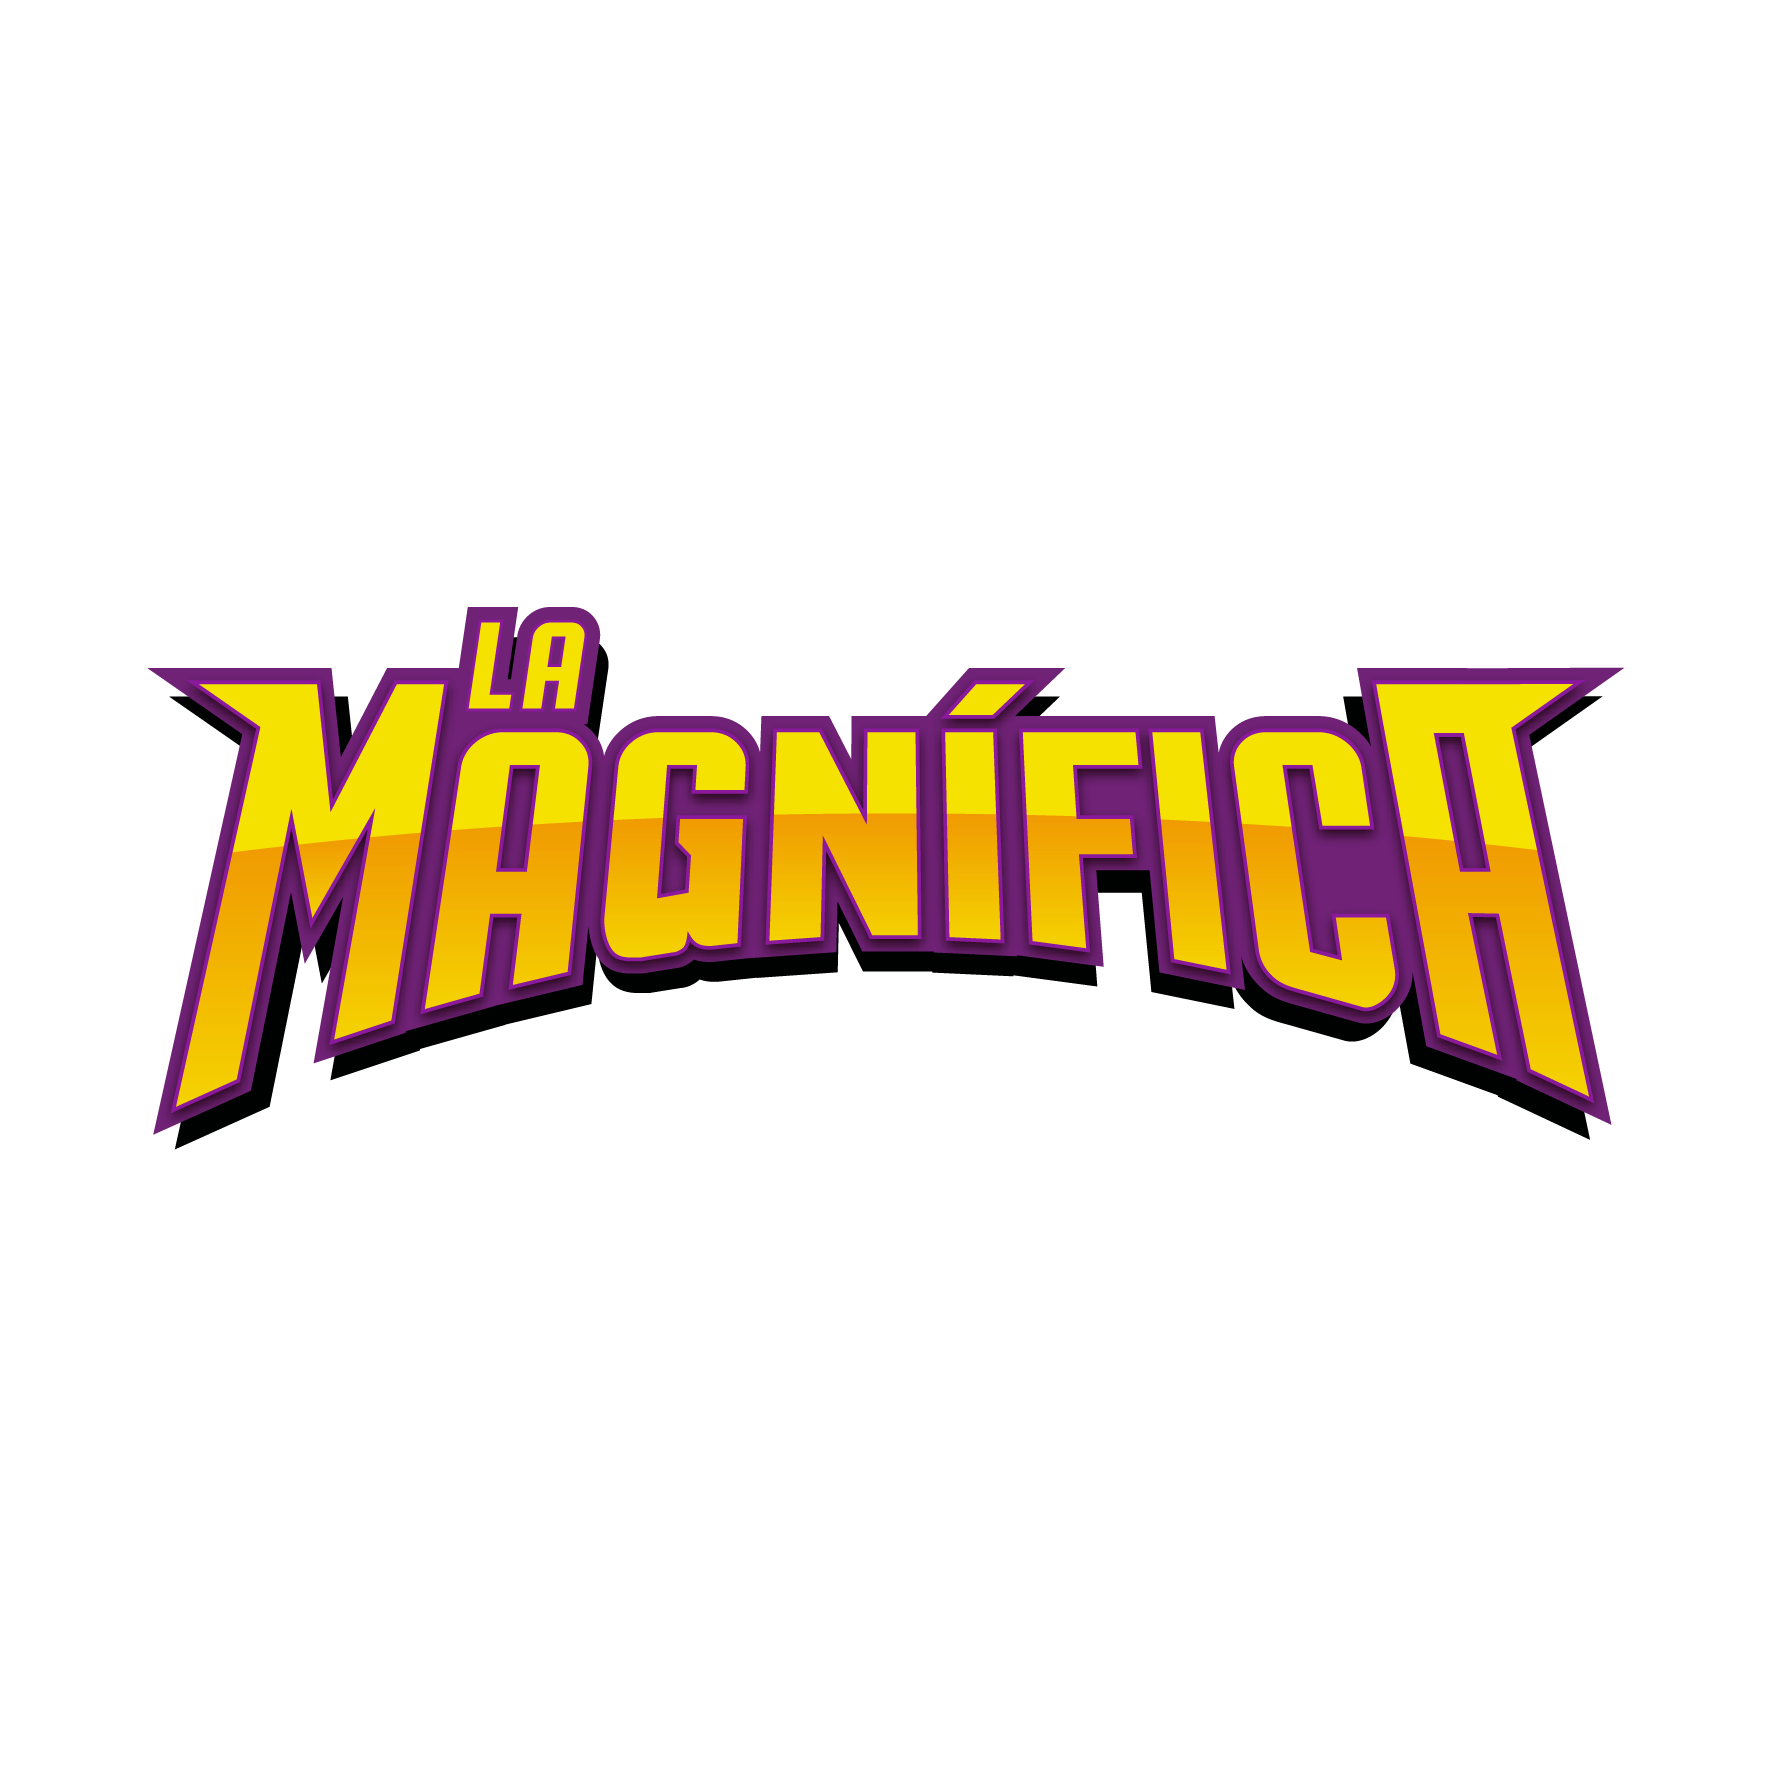 Listen to La Magnifica FM